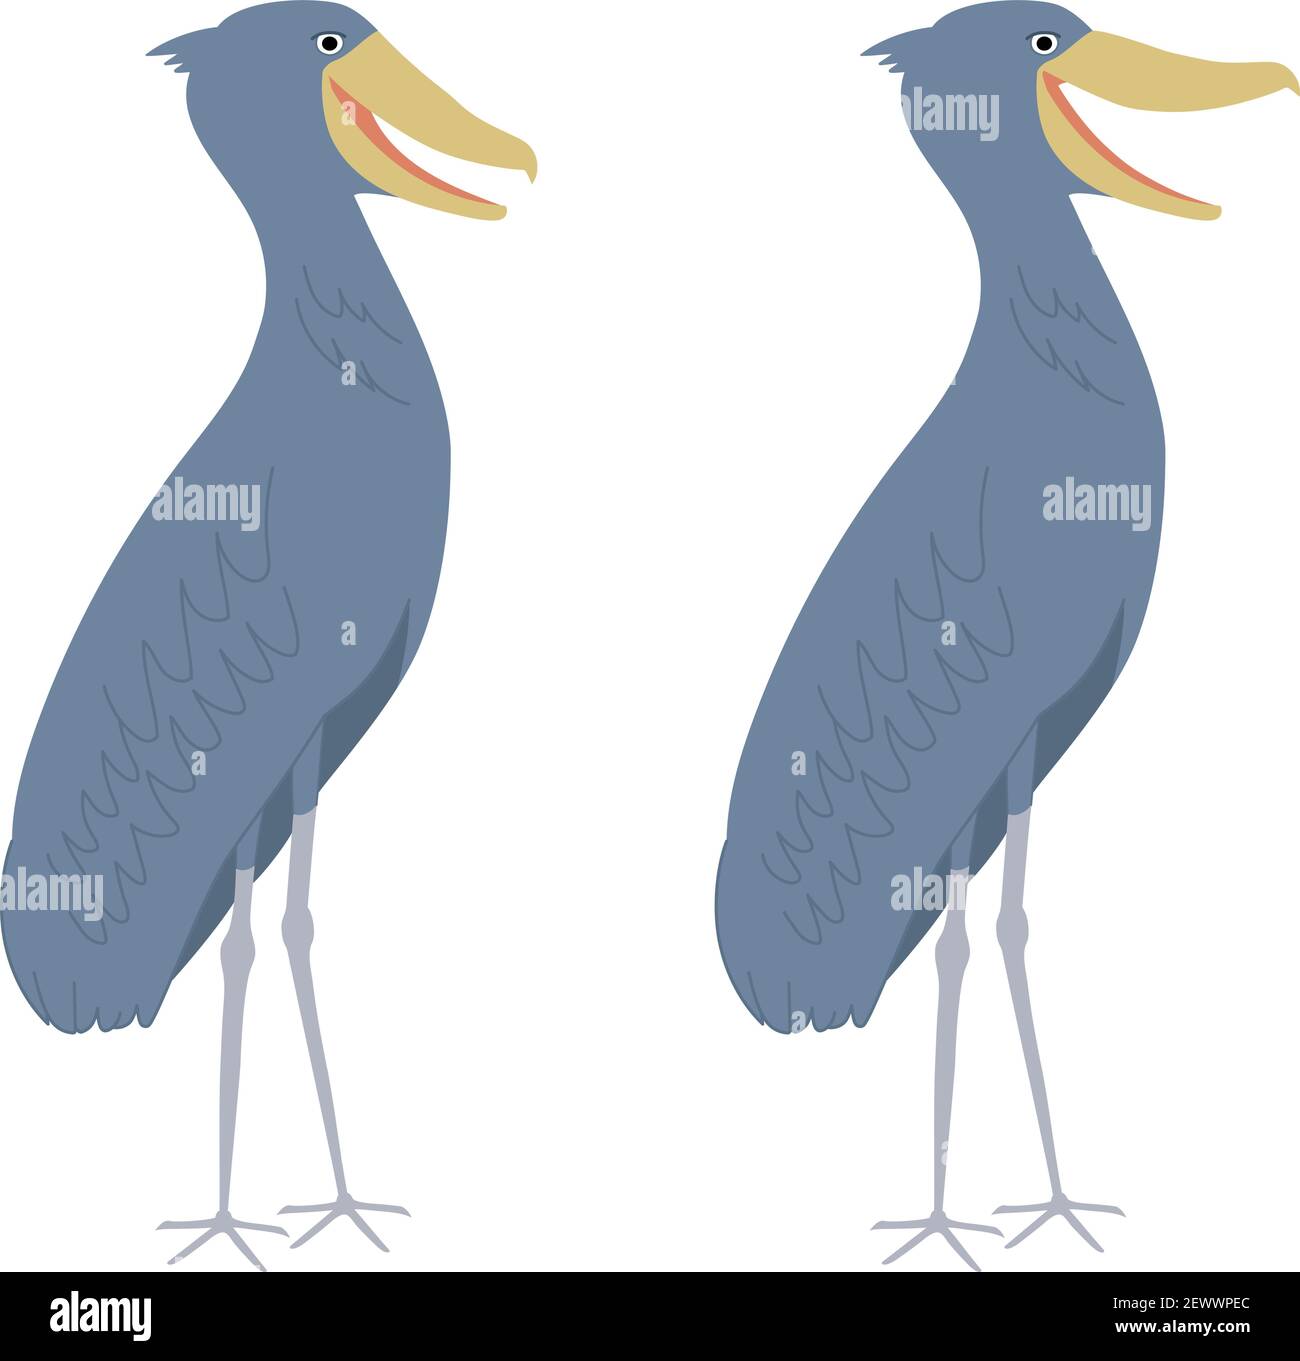 Schuhschnabel auch bekannt als Walkopf, Walkopf-Storch, oder Schuh-billed Storch. Es ist ein sehr großer storchähnlicher Vogel. Stock Vektor